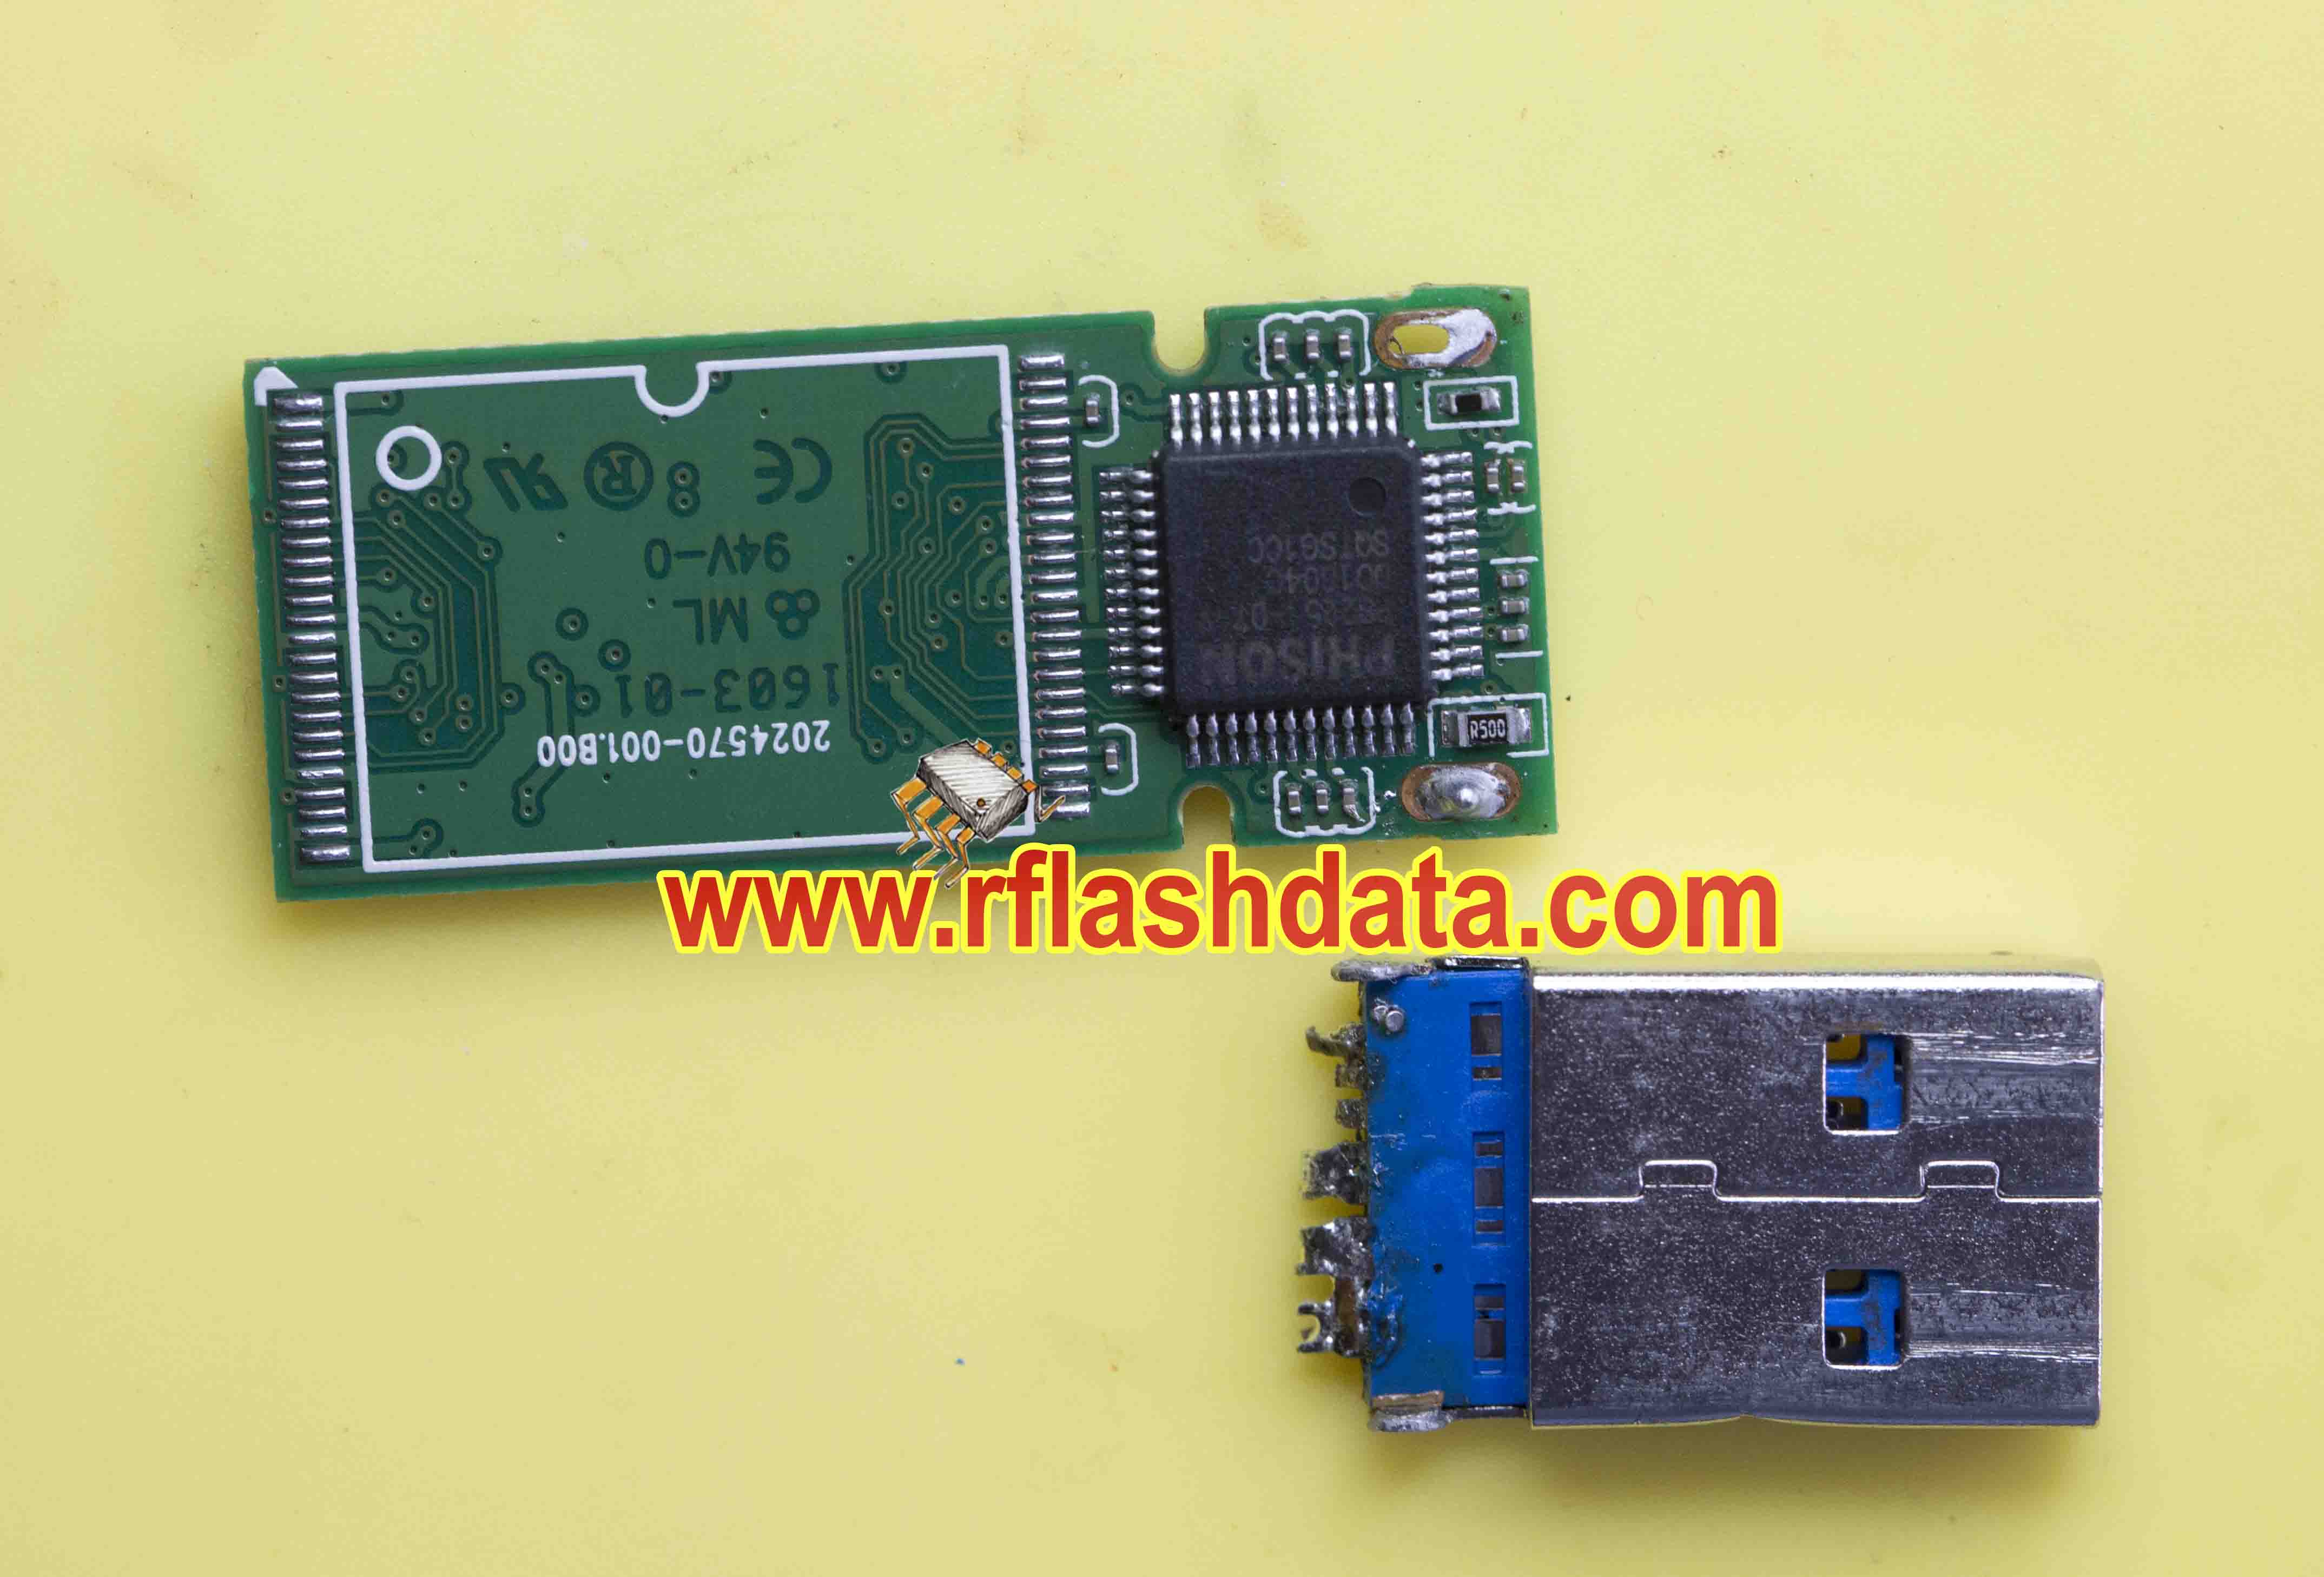 ps2251-07-v Flash drive recovery-金士顿优盘折断USB接口数据恢复主控芯片PS2251-07-V